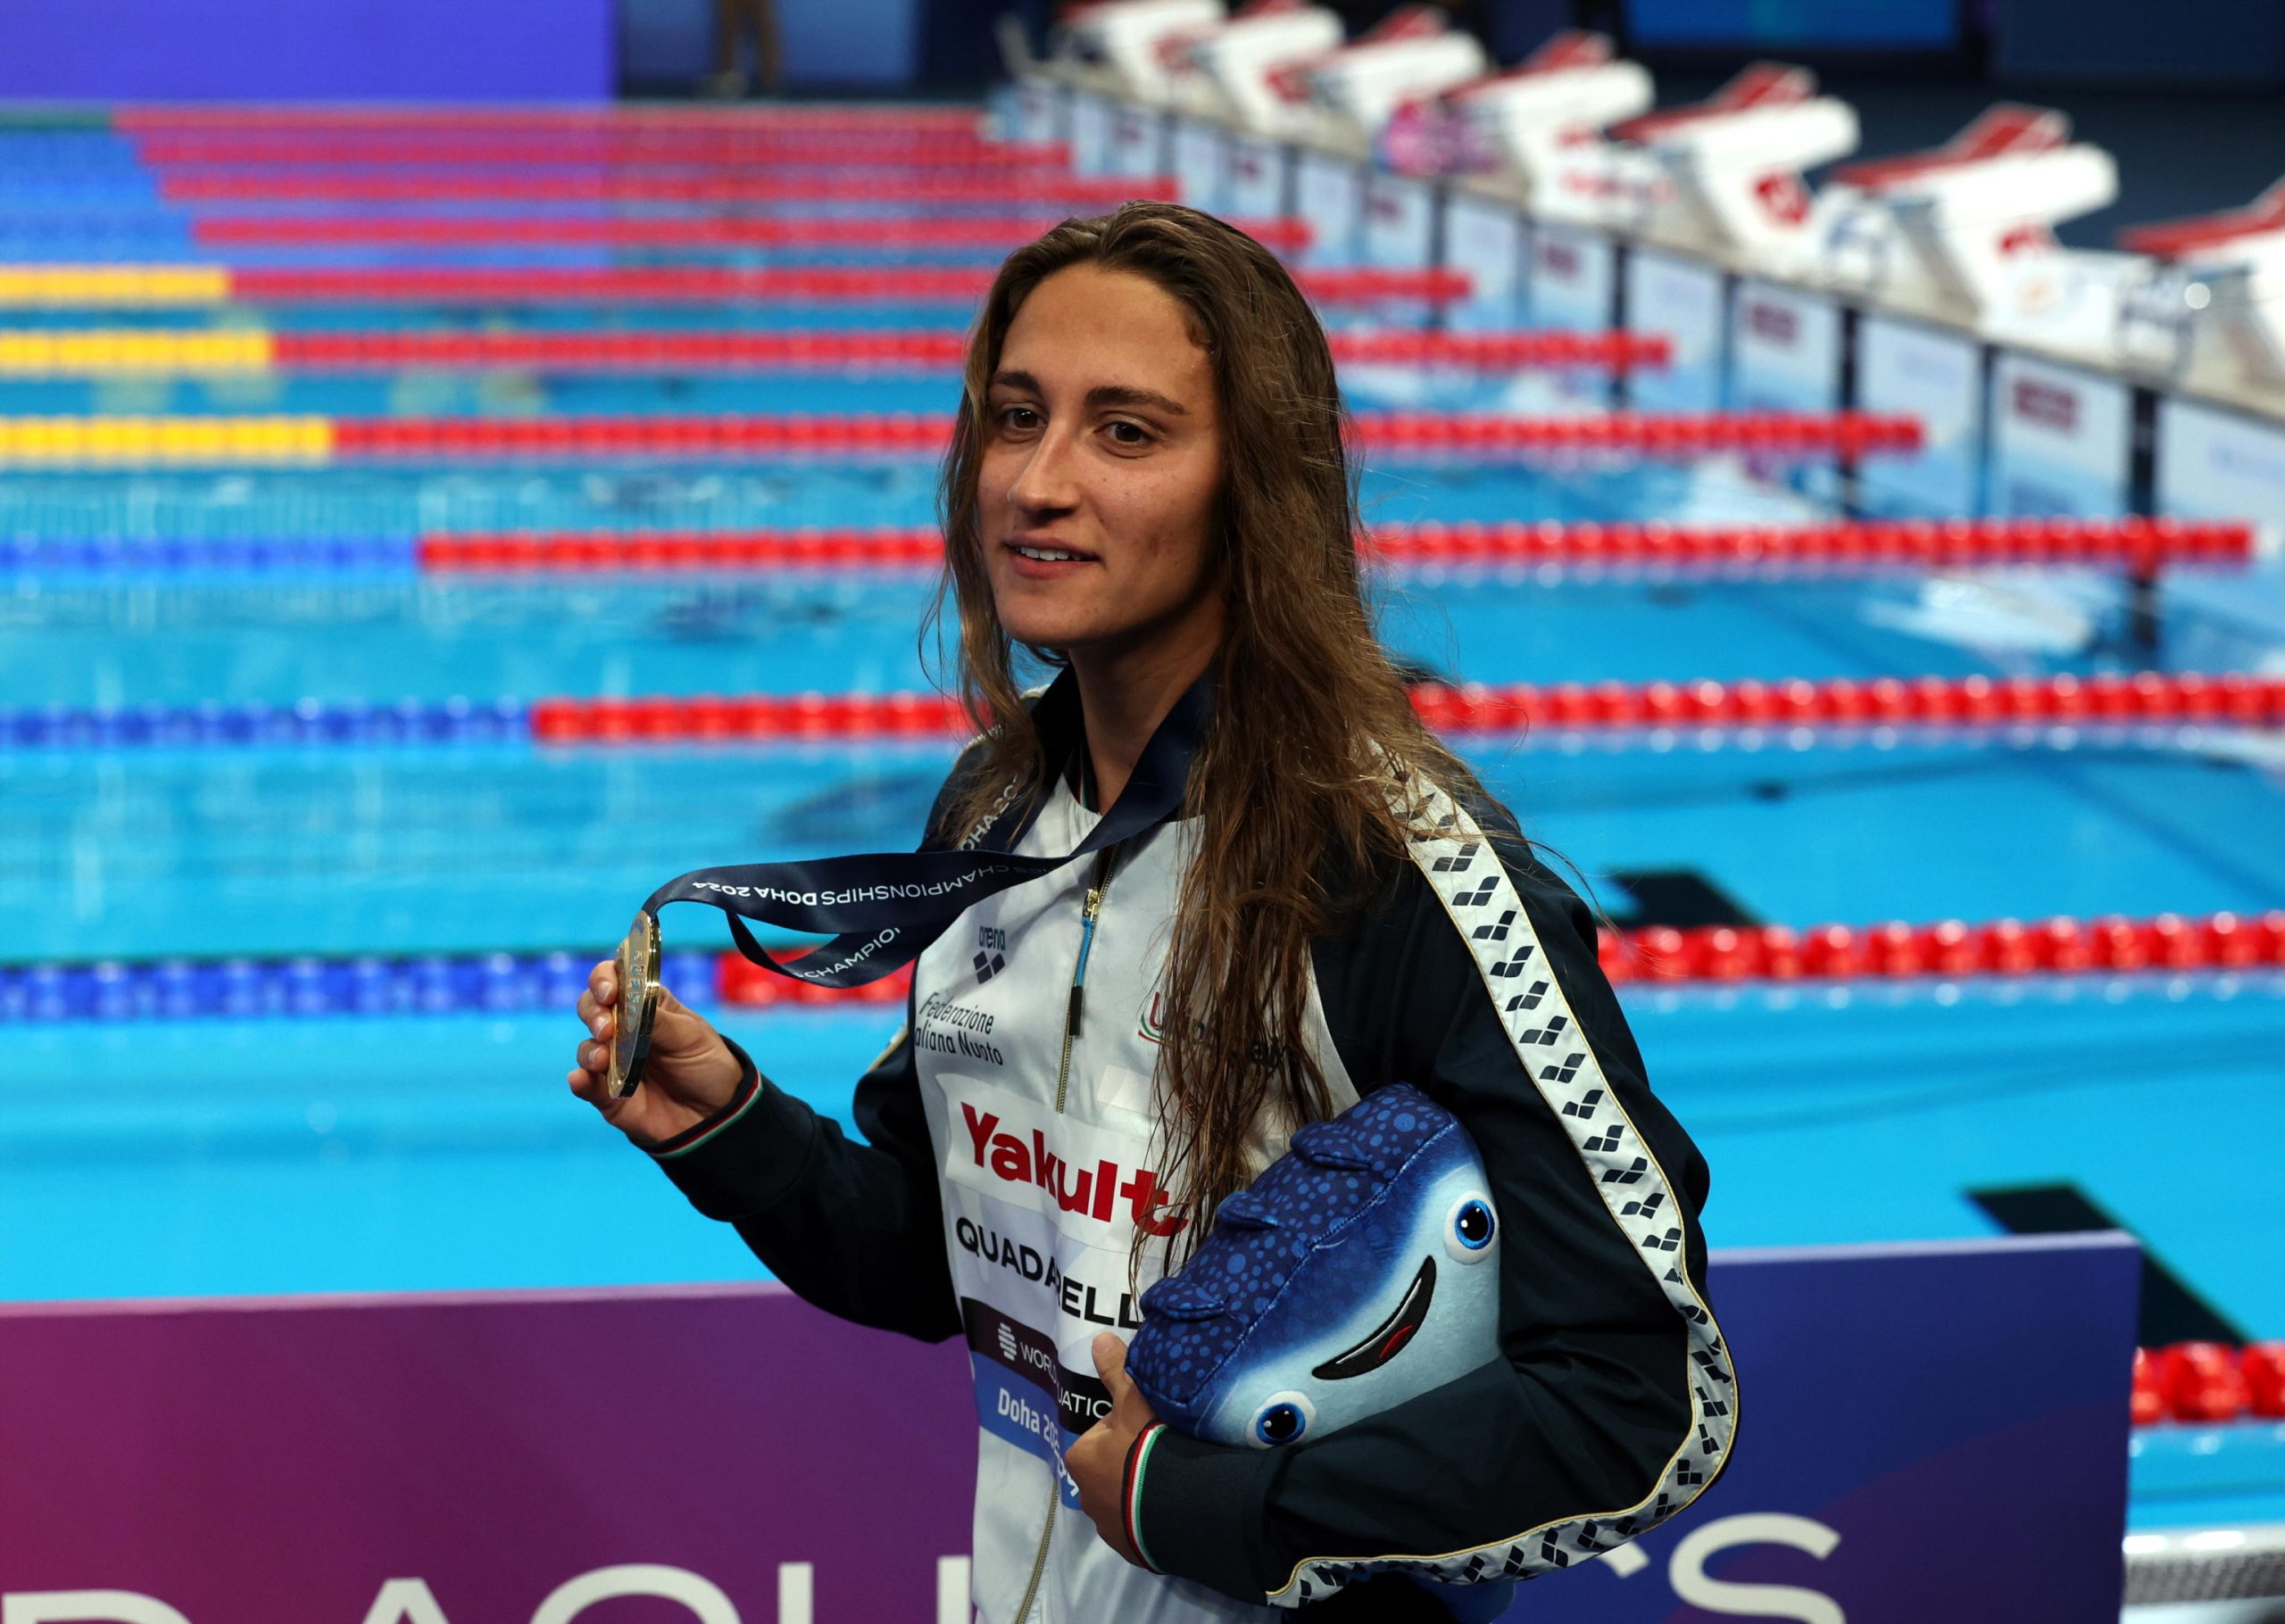 Simona Quadarella mostra la medaglia d'oro negli 800 stile libero conquistata ai mondiali di Doha